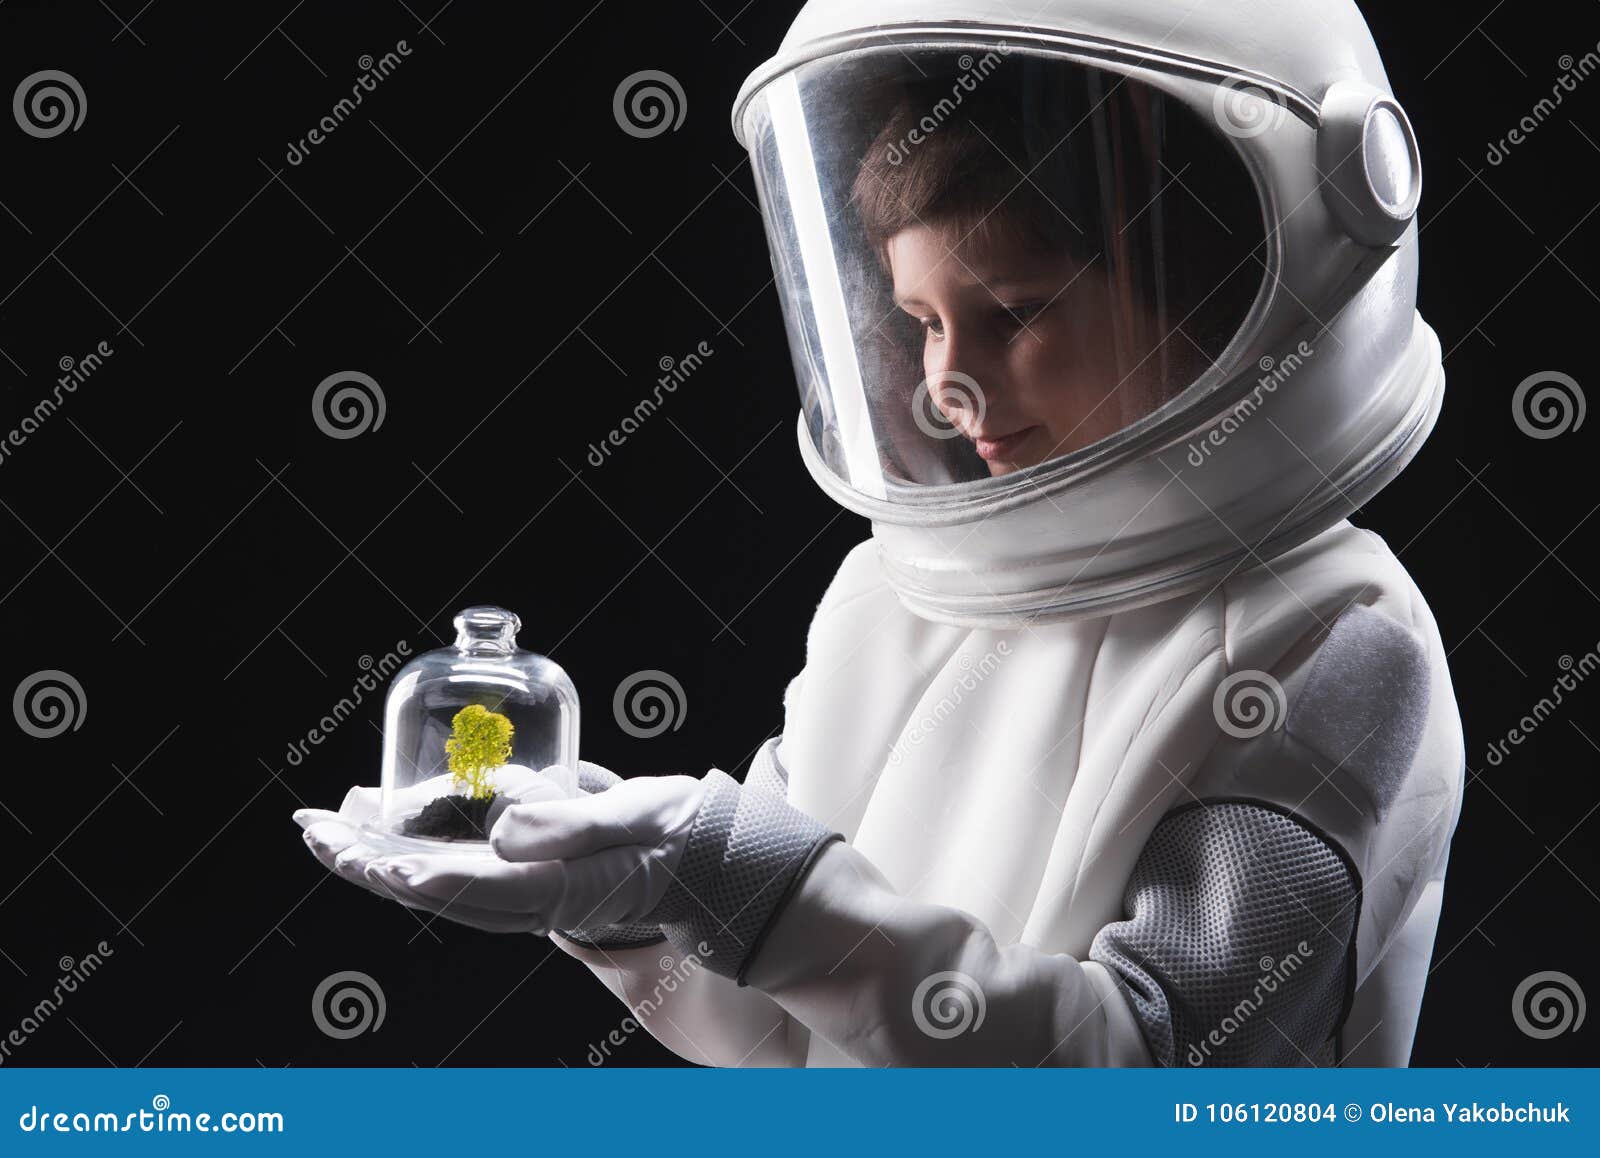 Photo de stock L'enfant est habillé d'un casque astronaute